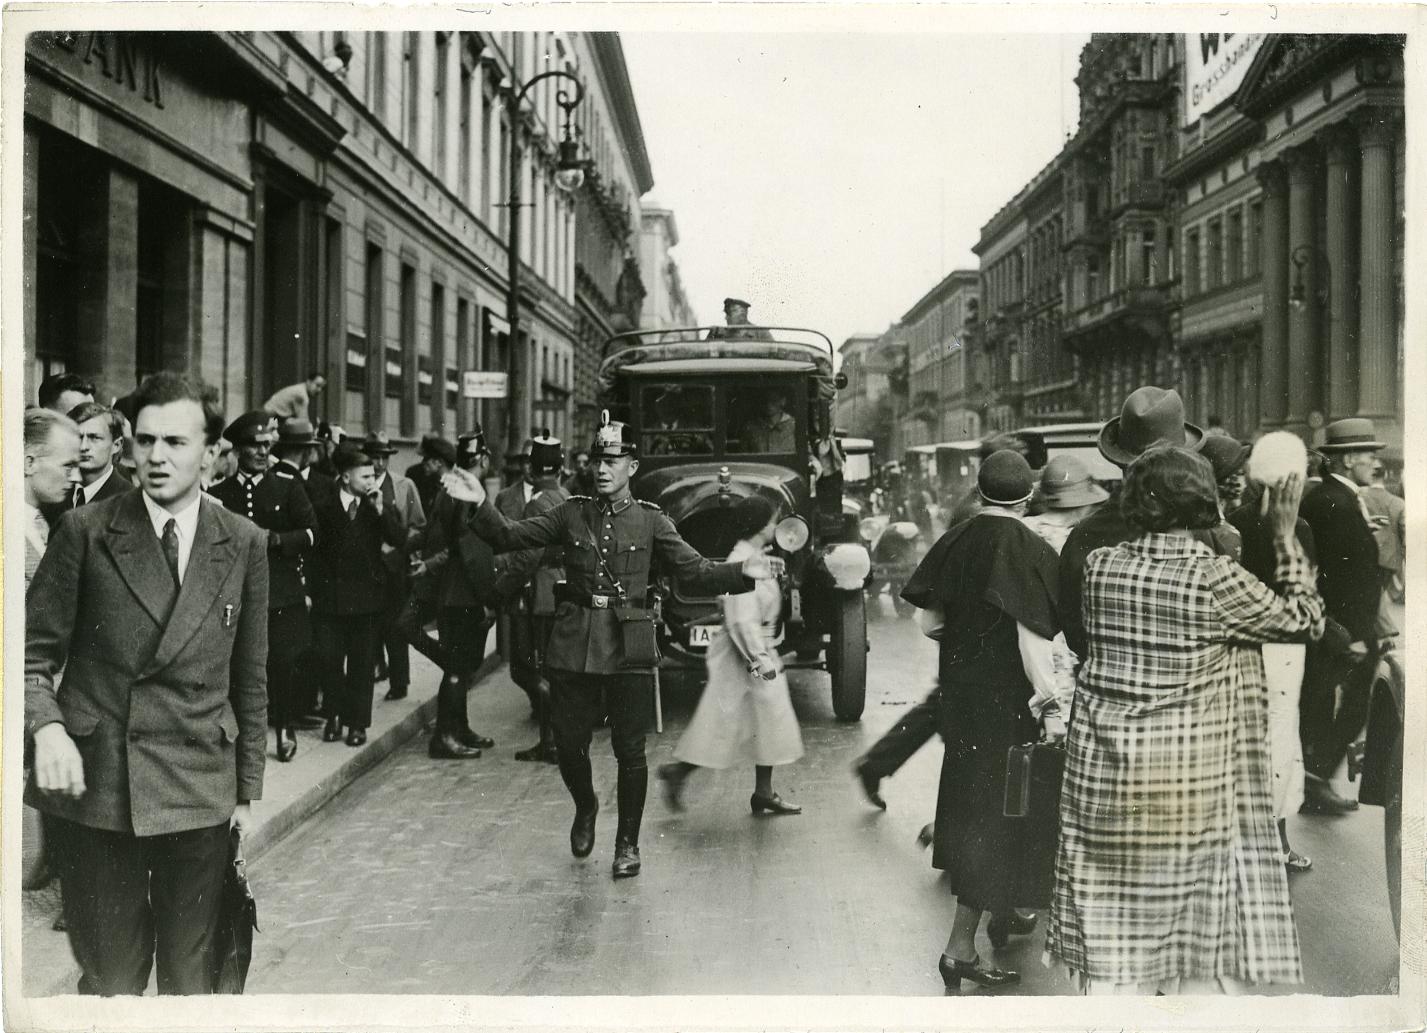 Foto: Polizei in der Wilhelmstraße nach Verhängung des Ausnahmezustandes beim "Preußenschlag", 1932